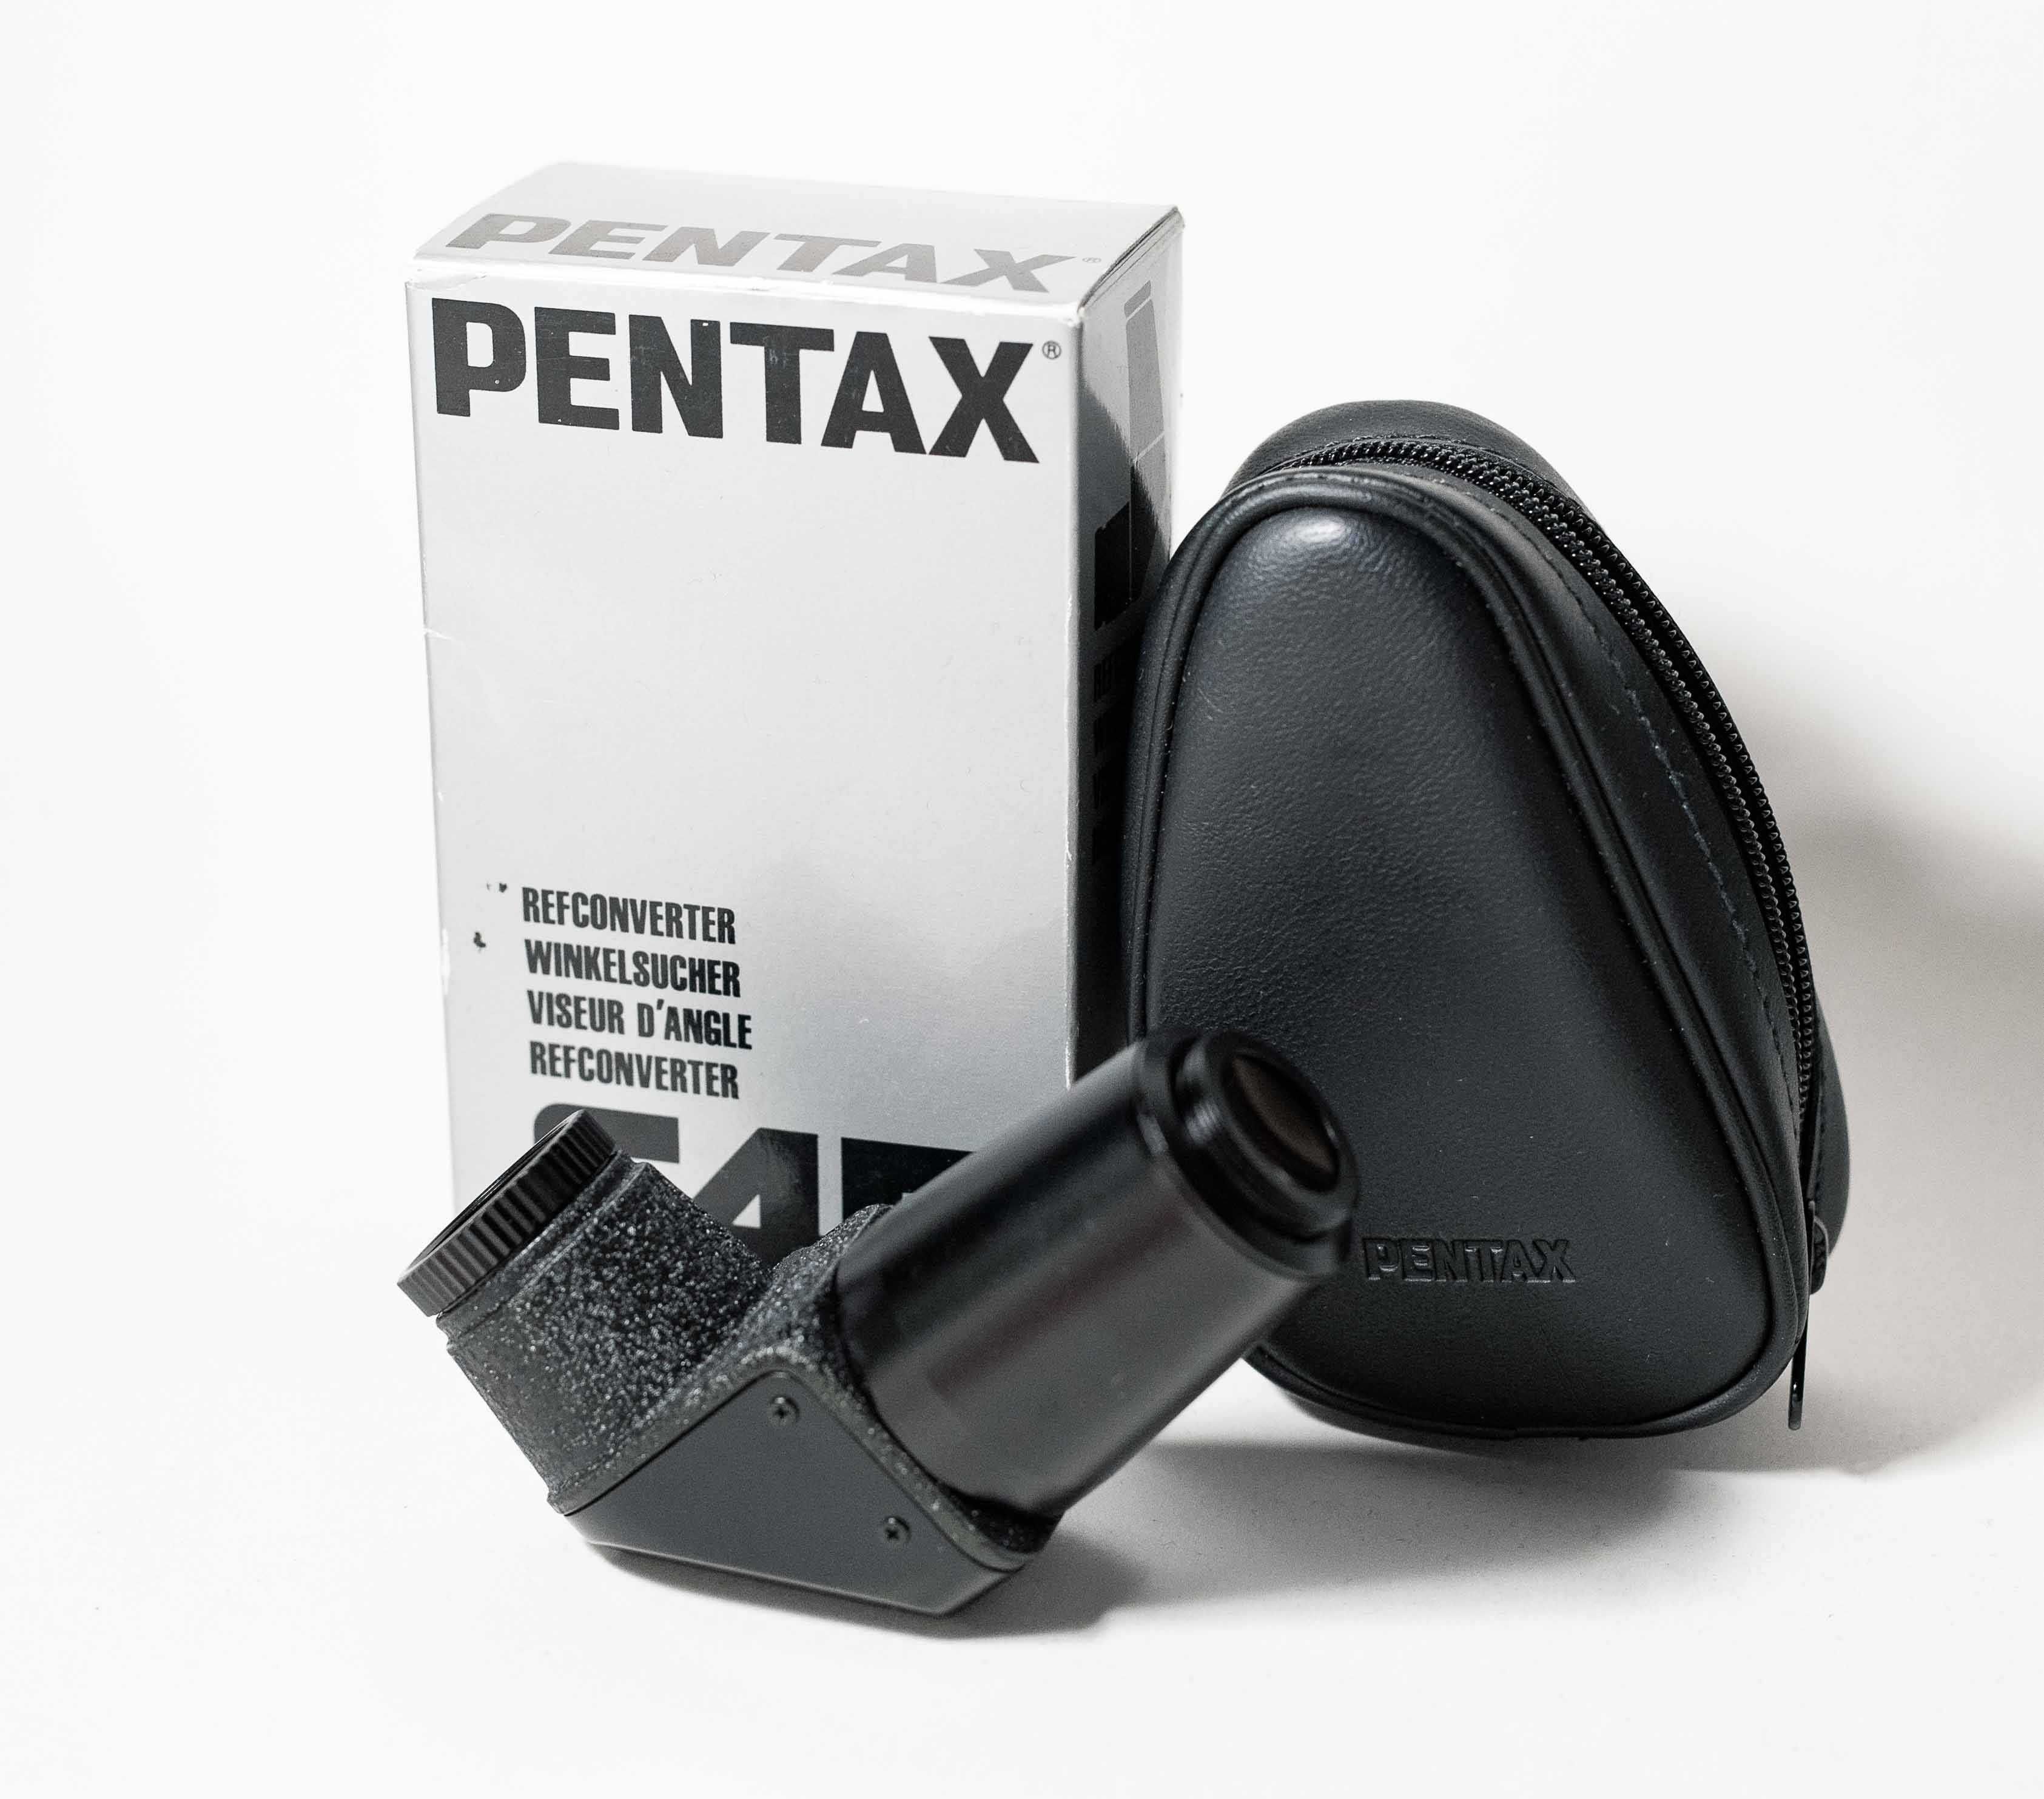 Аксесуари для Pentax 645 Eyepiece наглазник Refconverter Angle finder